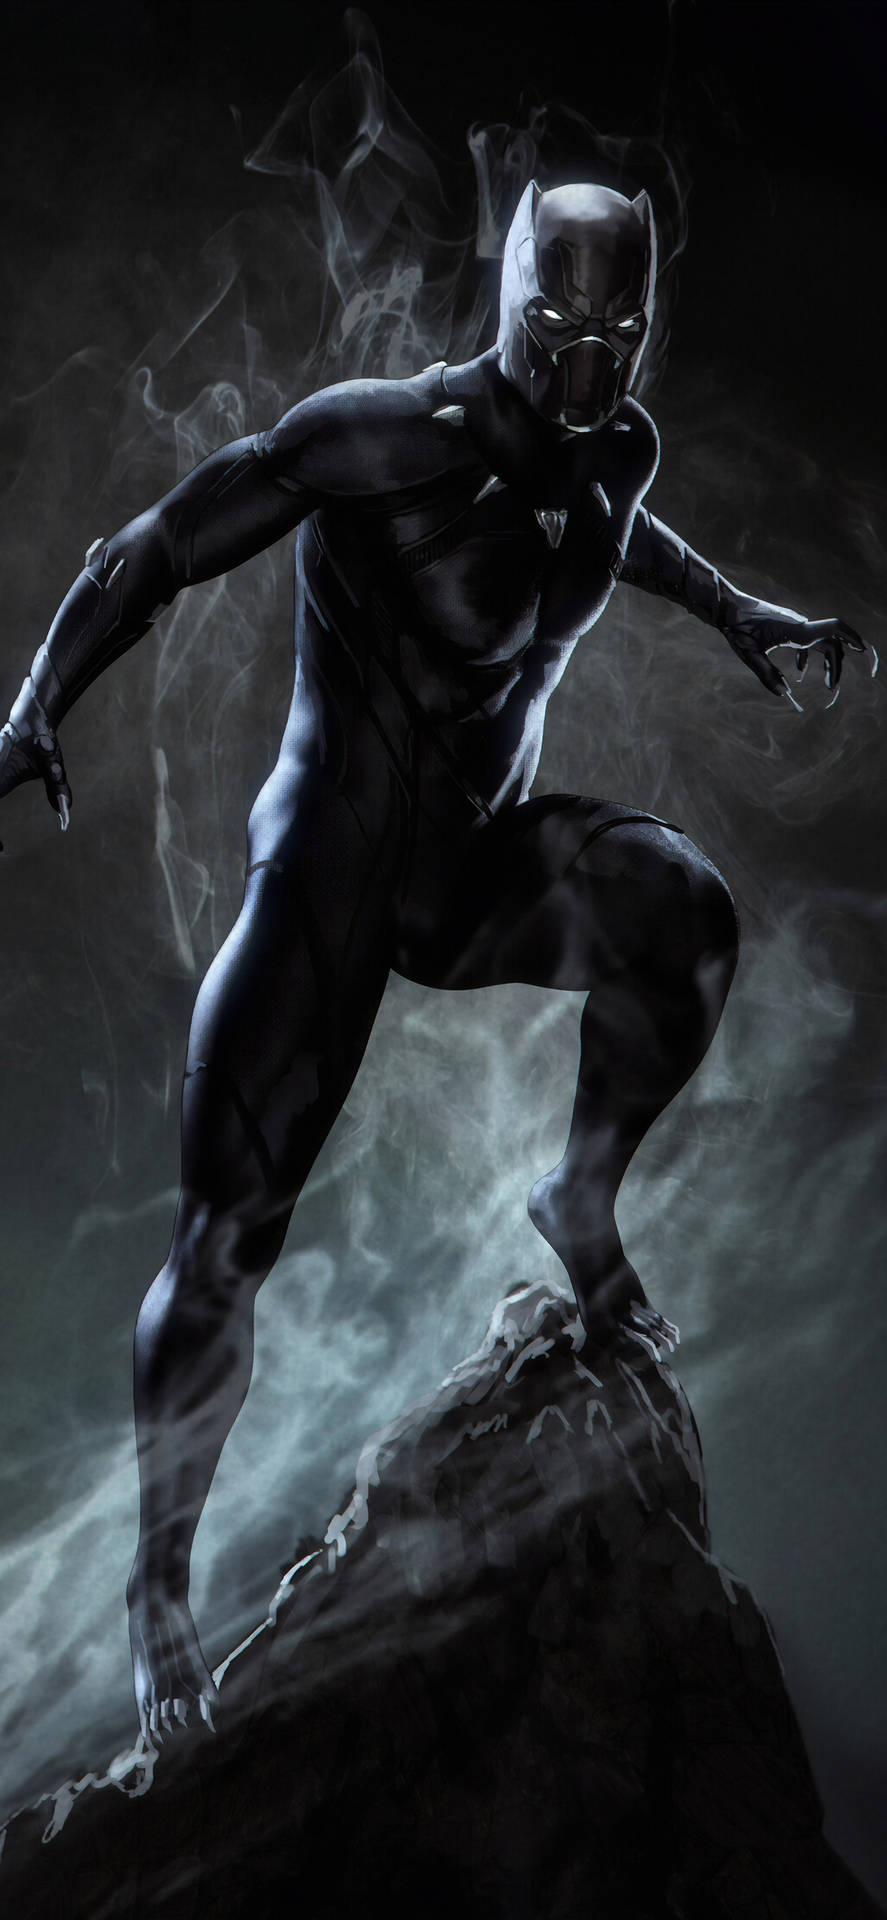 Black Panther On Rock Superhero iPhone Wallpaper